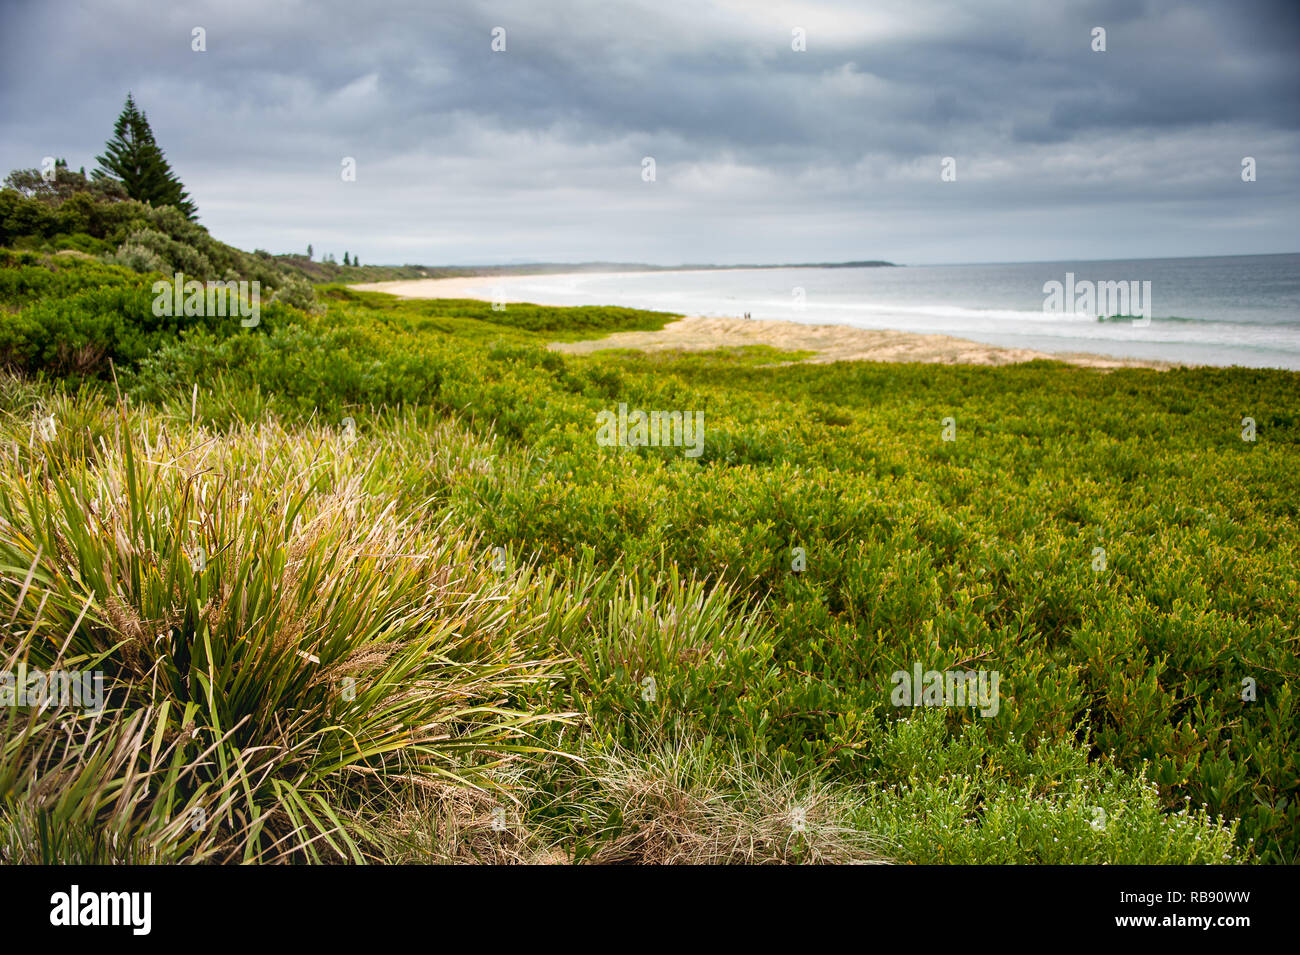 Diamond Beach sur la côte centrale, New South Wales, Australie. Scène à couper le souffle, forêt pluviale côtière répond aux dunes de sable avec un fond de ciel orageux Banque D'Images